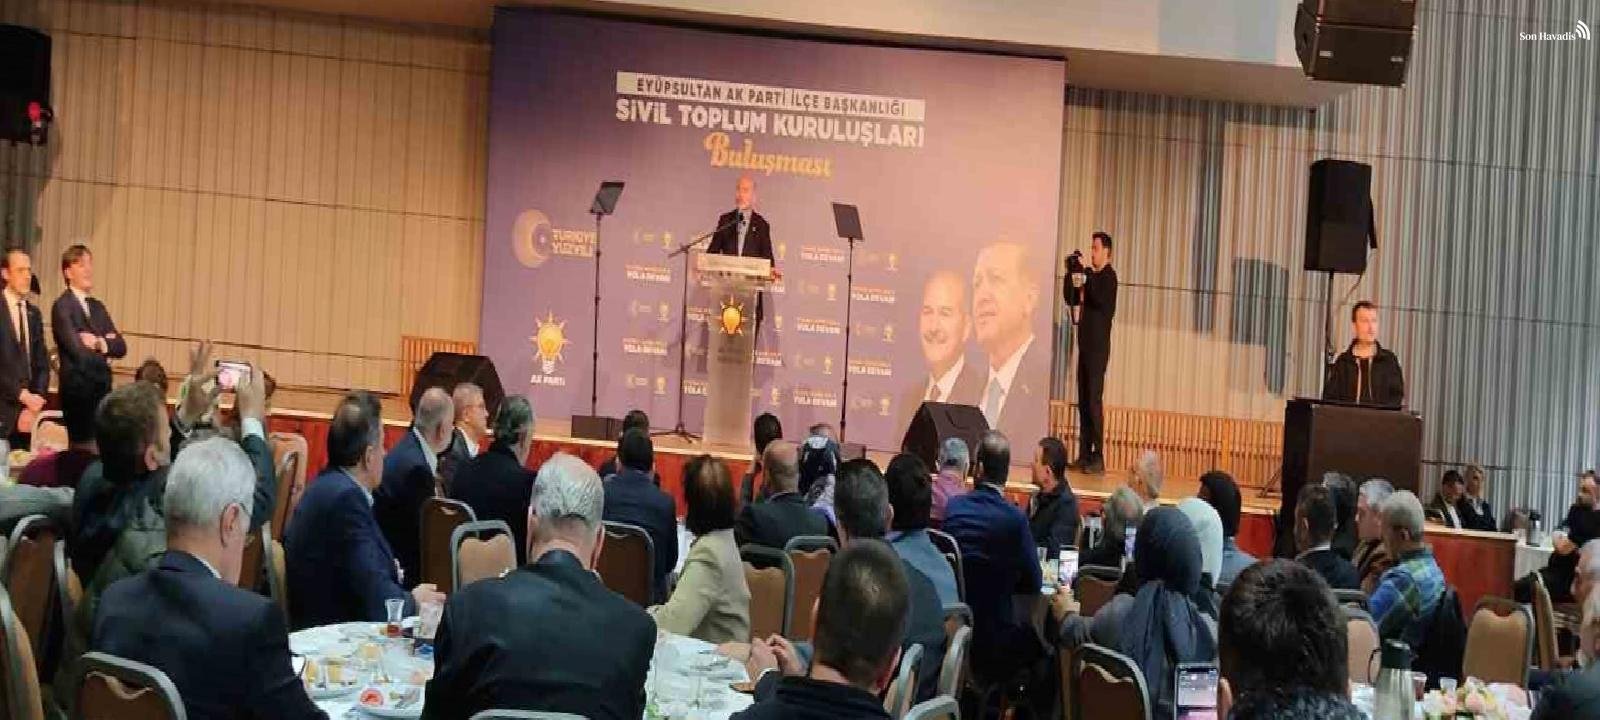 Bakan Soylu: "Kılıçdaroğlu kendi milletvekilinin kasetinin çıkması için bulmamı istedi"